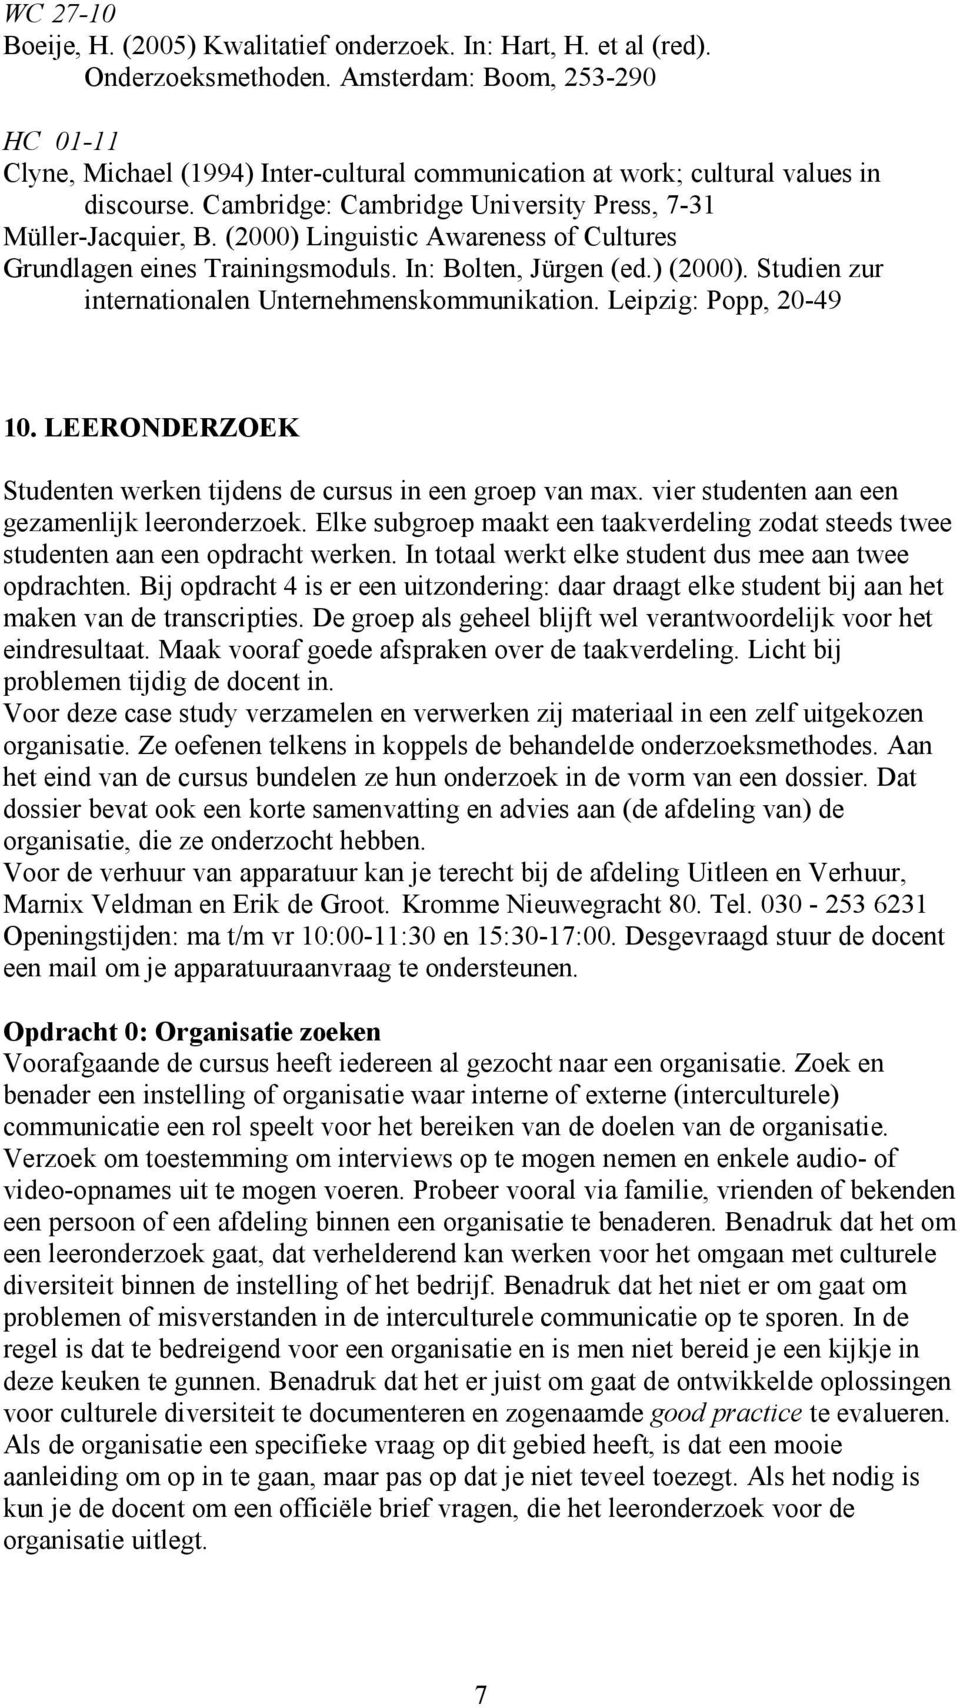 (2000) Linguistic Awareness of Cultures Grundlagen eines Trainingsmoduls. In: Bolten, Jürgen (ed.) (2000). Studien zur internationalen Unternehmenskommunikation. Leipzig: Popp, 20-49 10.